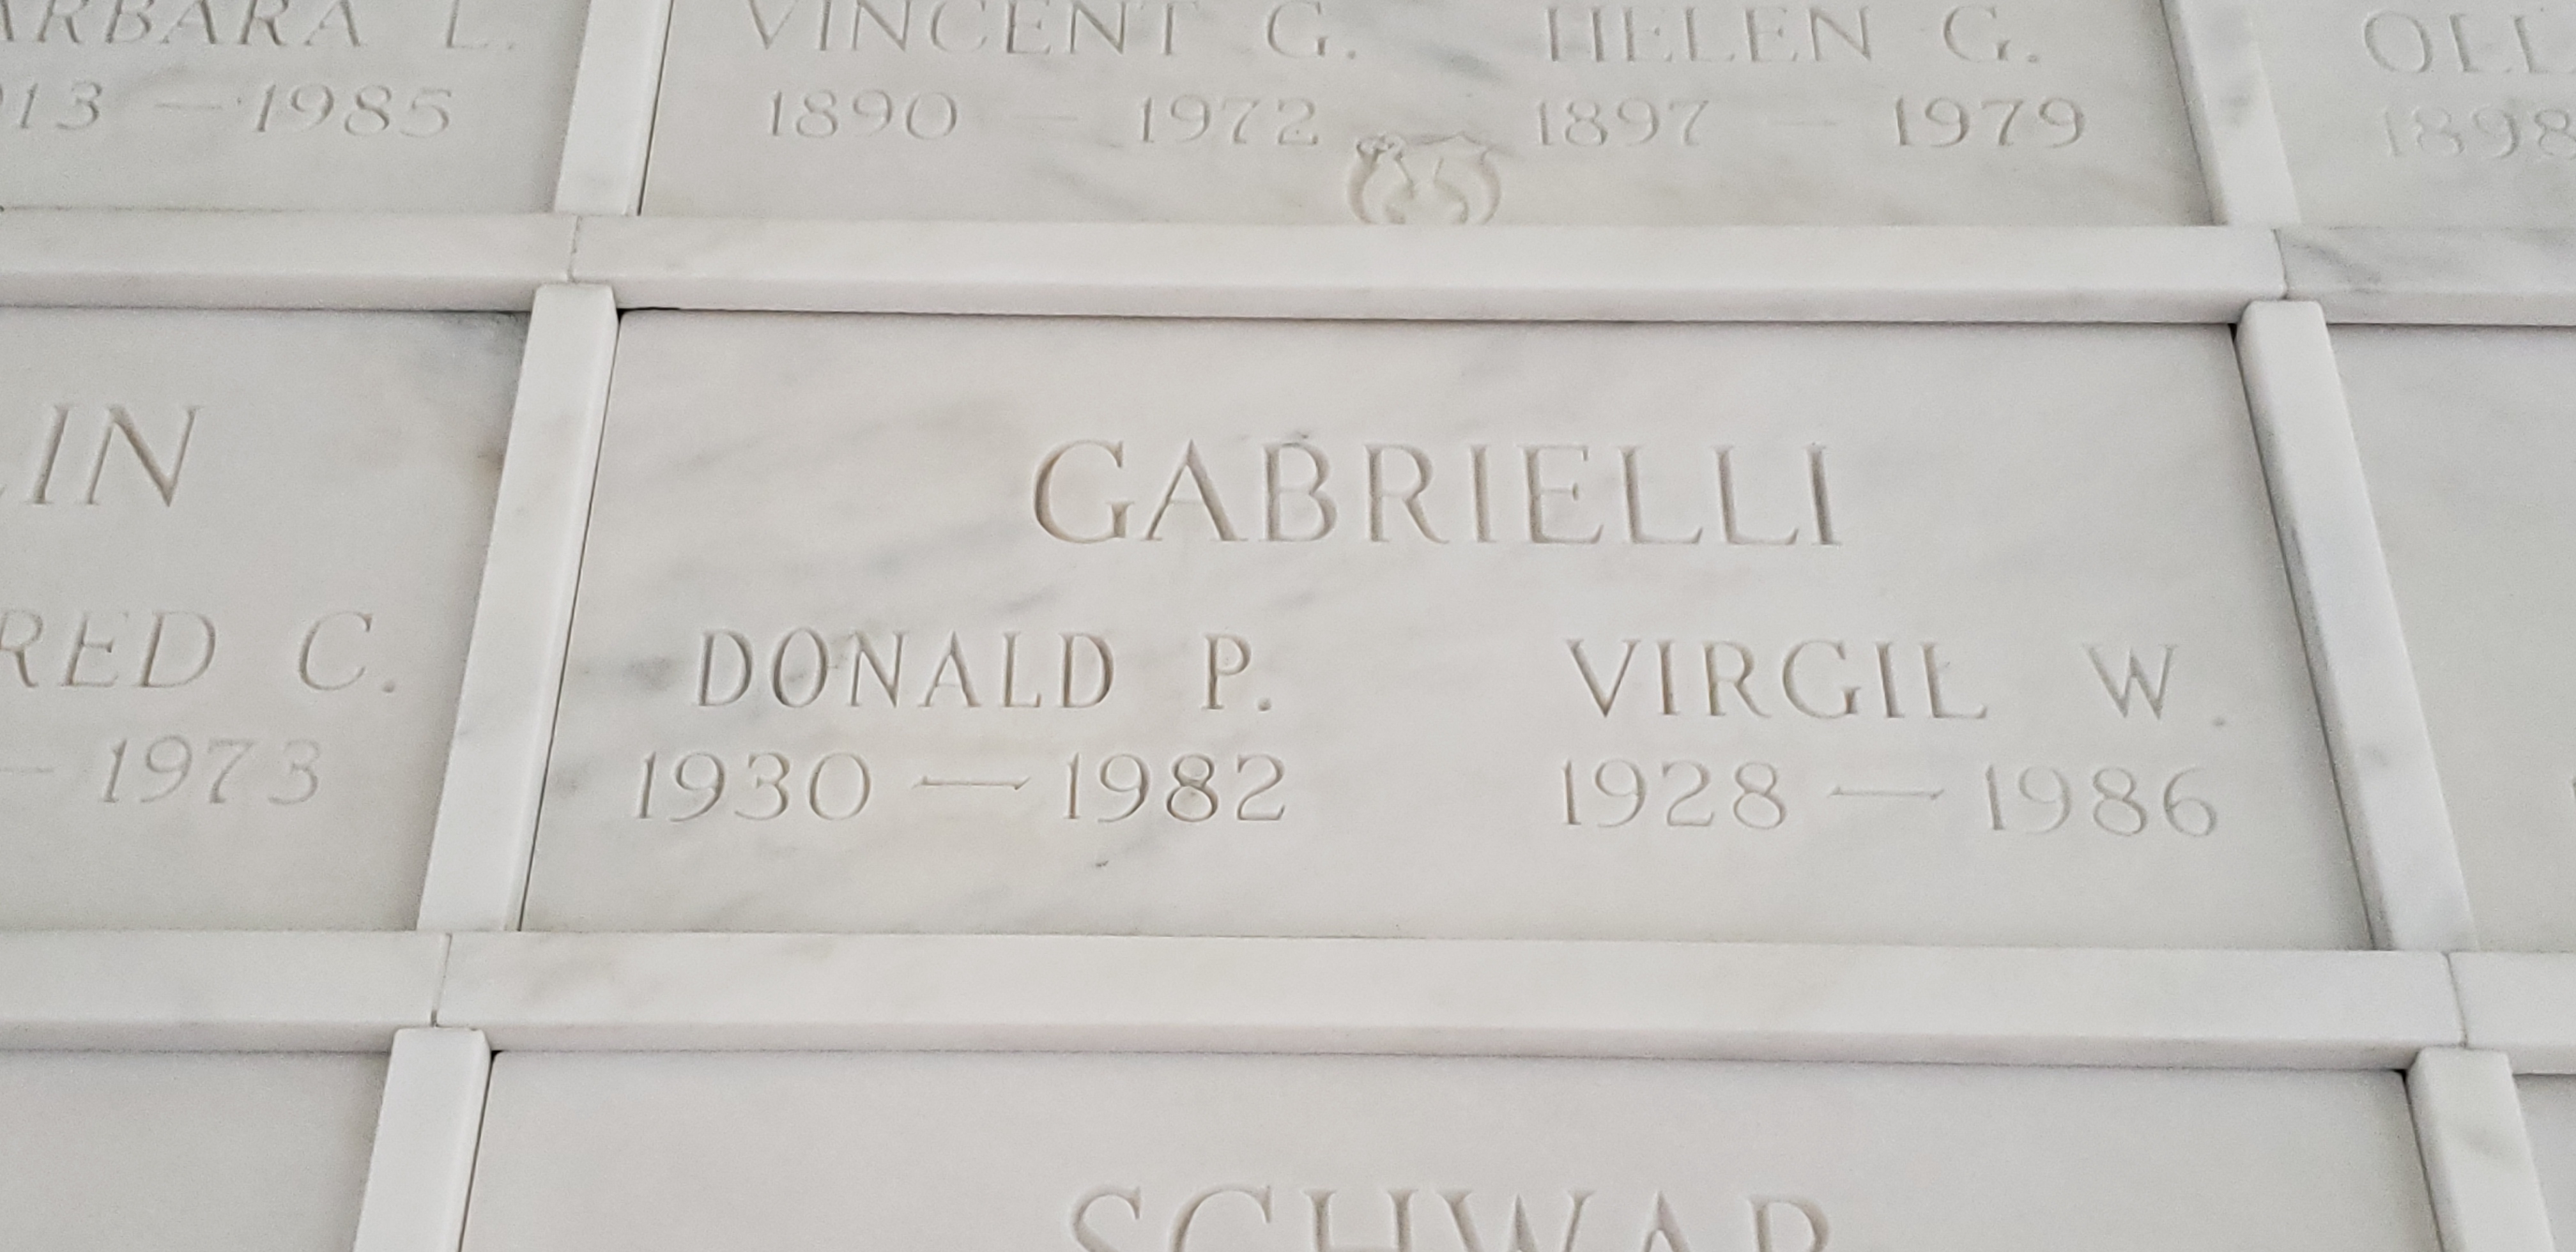 Virgil W Gabrielli